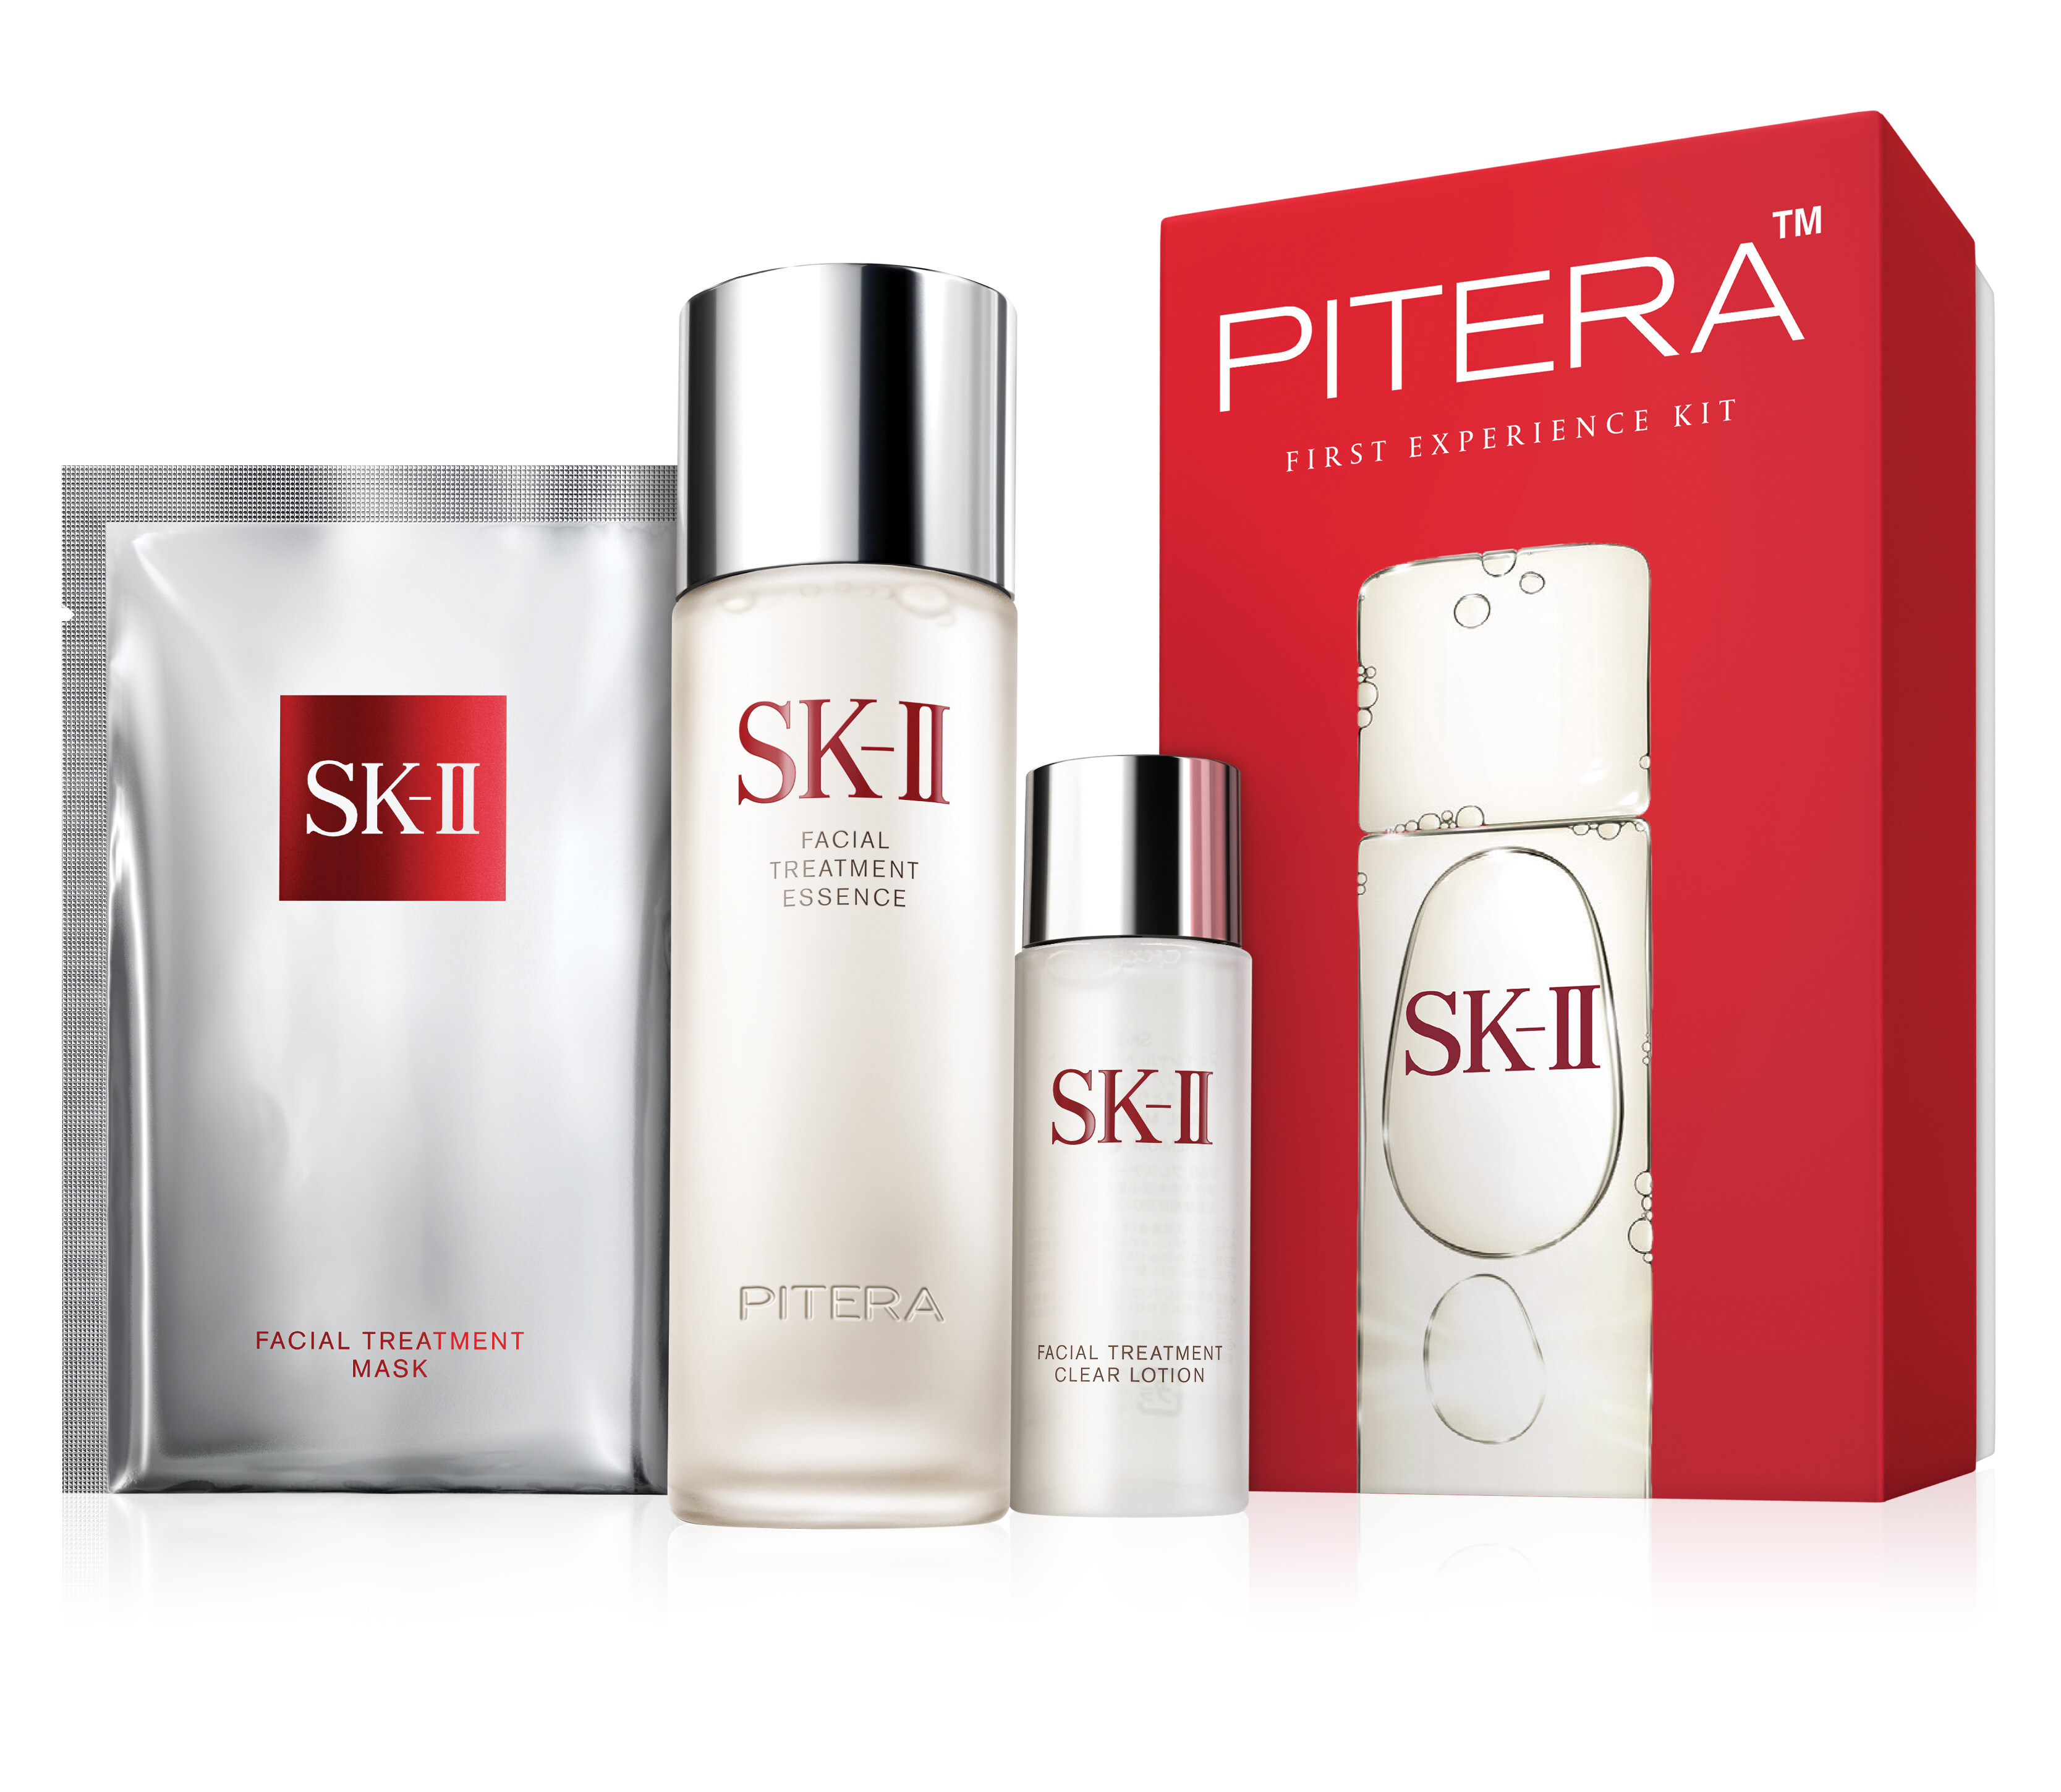 過年送禮贈自己一支SK-II 神仙水，讓神仙水中的經典成分PITERA™將你的肌膚「升級」，變得更剔透水潤吧！